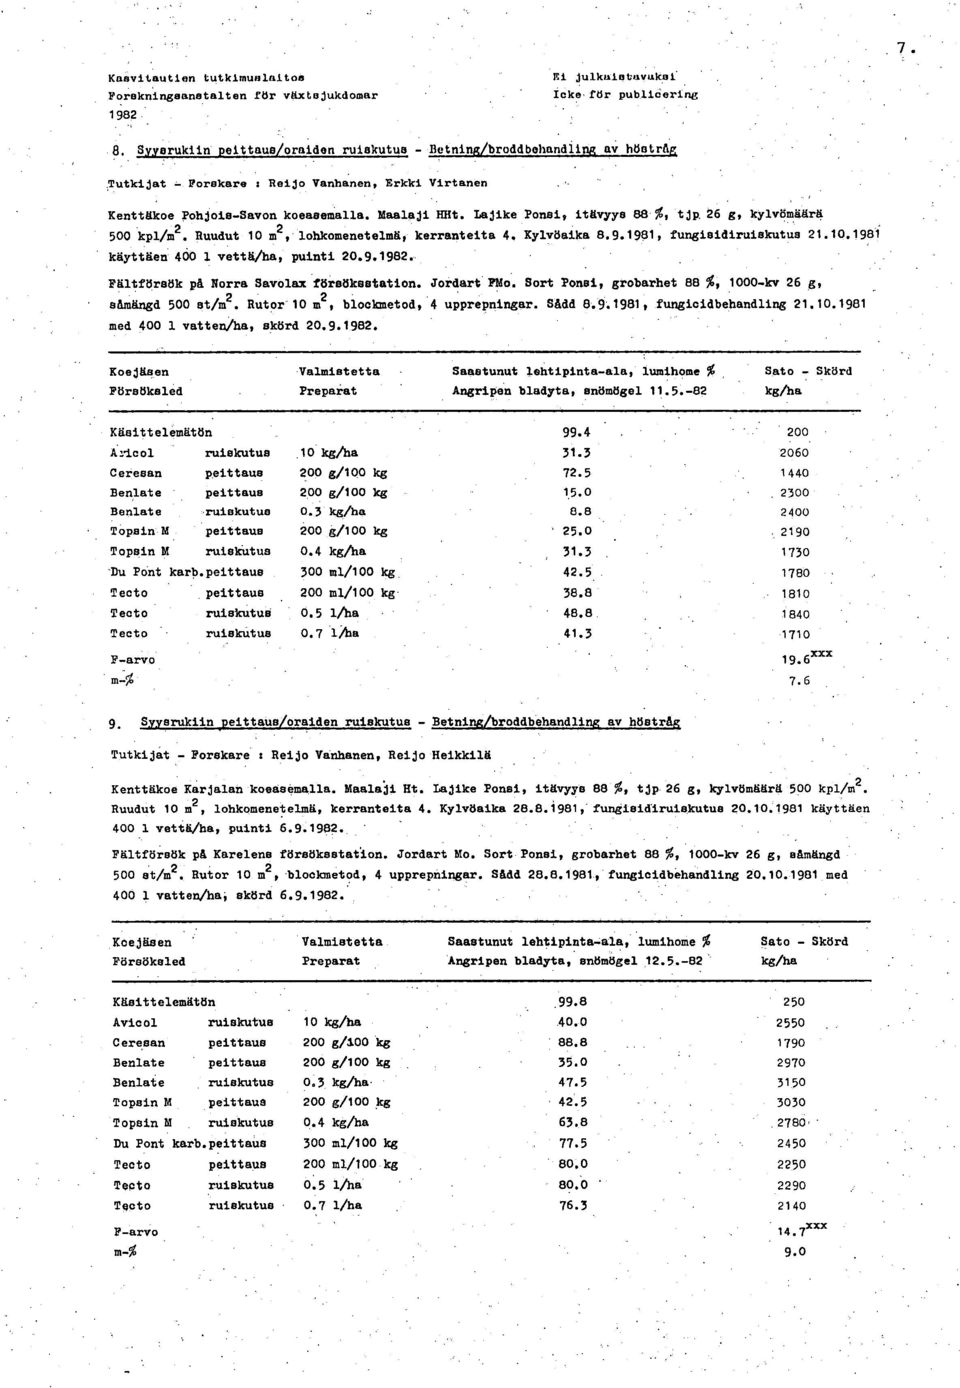 lajike Ponsi, itävyye 88 %, tjp. 26 g, kylvömäärä 5 kpl/m2. Ruudut 1 m2, lohkomenetelmä, kerranteita 4. Kylvöaika 8.9.1981, fungisidiruiskutus 21.1.1981 käyttäen 4 1 vettä/ha, puinti 2.9.. Fältförsök på Norra Savolax försökestation.